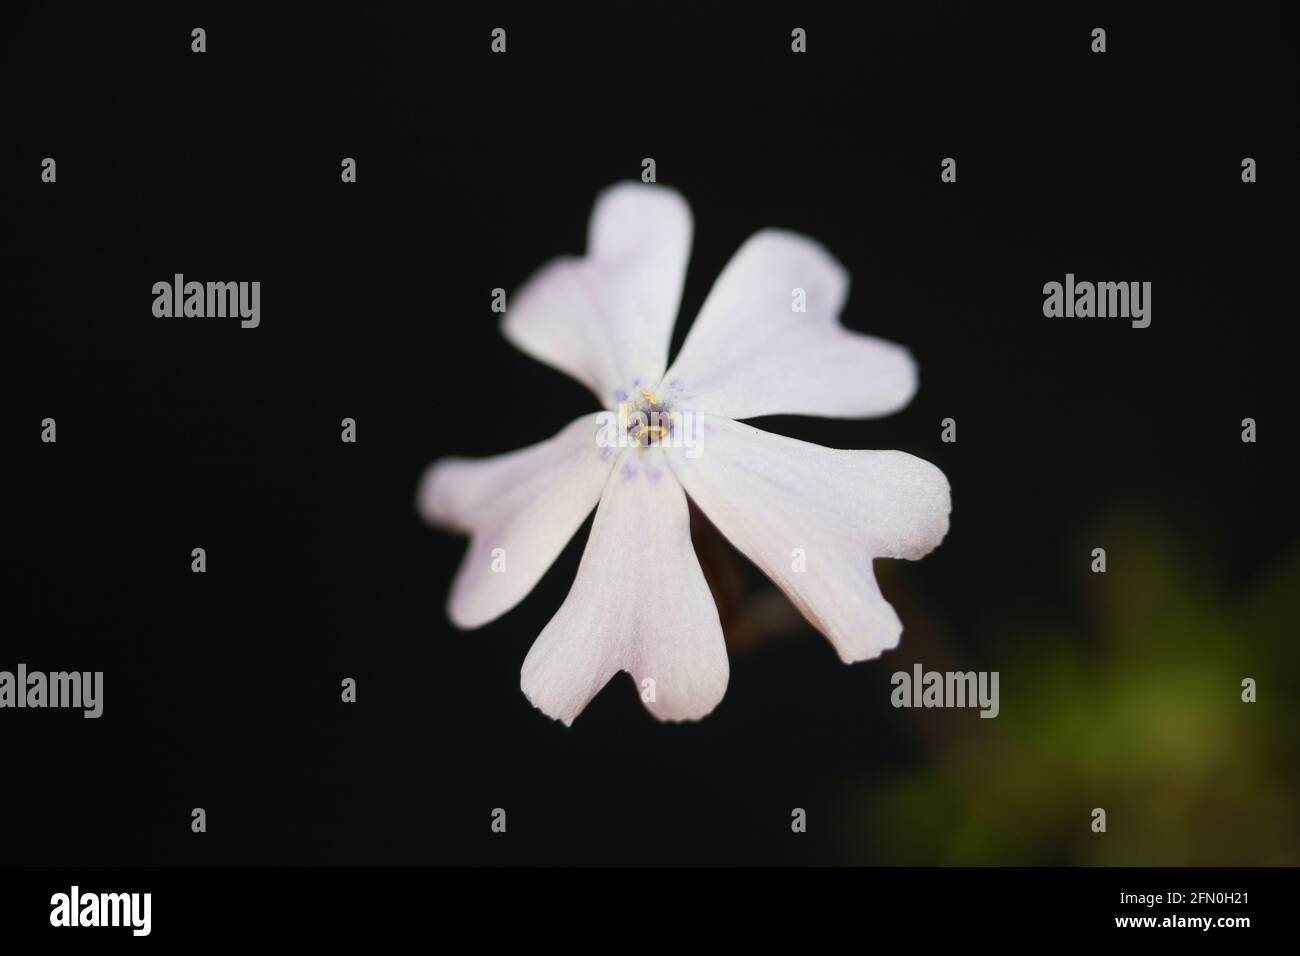 Fiore bianco fioritura primo piano Phlox sabulata L. famiglia polemoniaceae in fondo nero botanica moderna alta qualità grandi dimensioni stampe educative Foto Stock